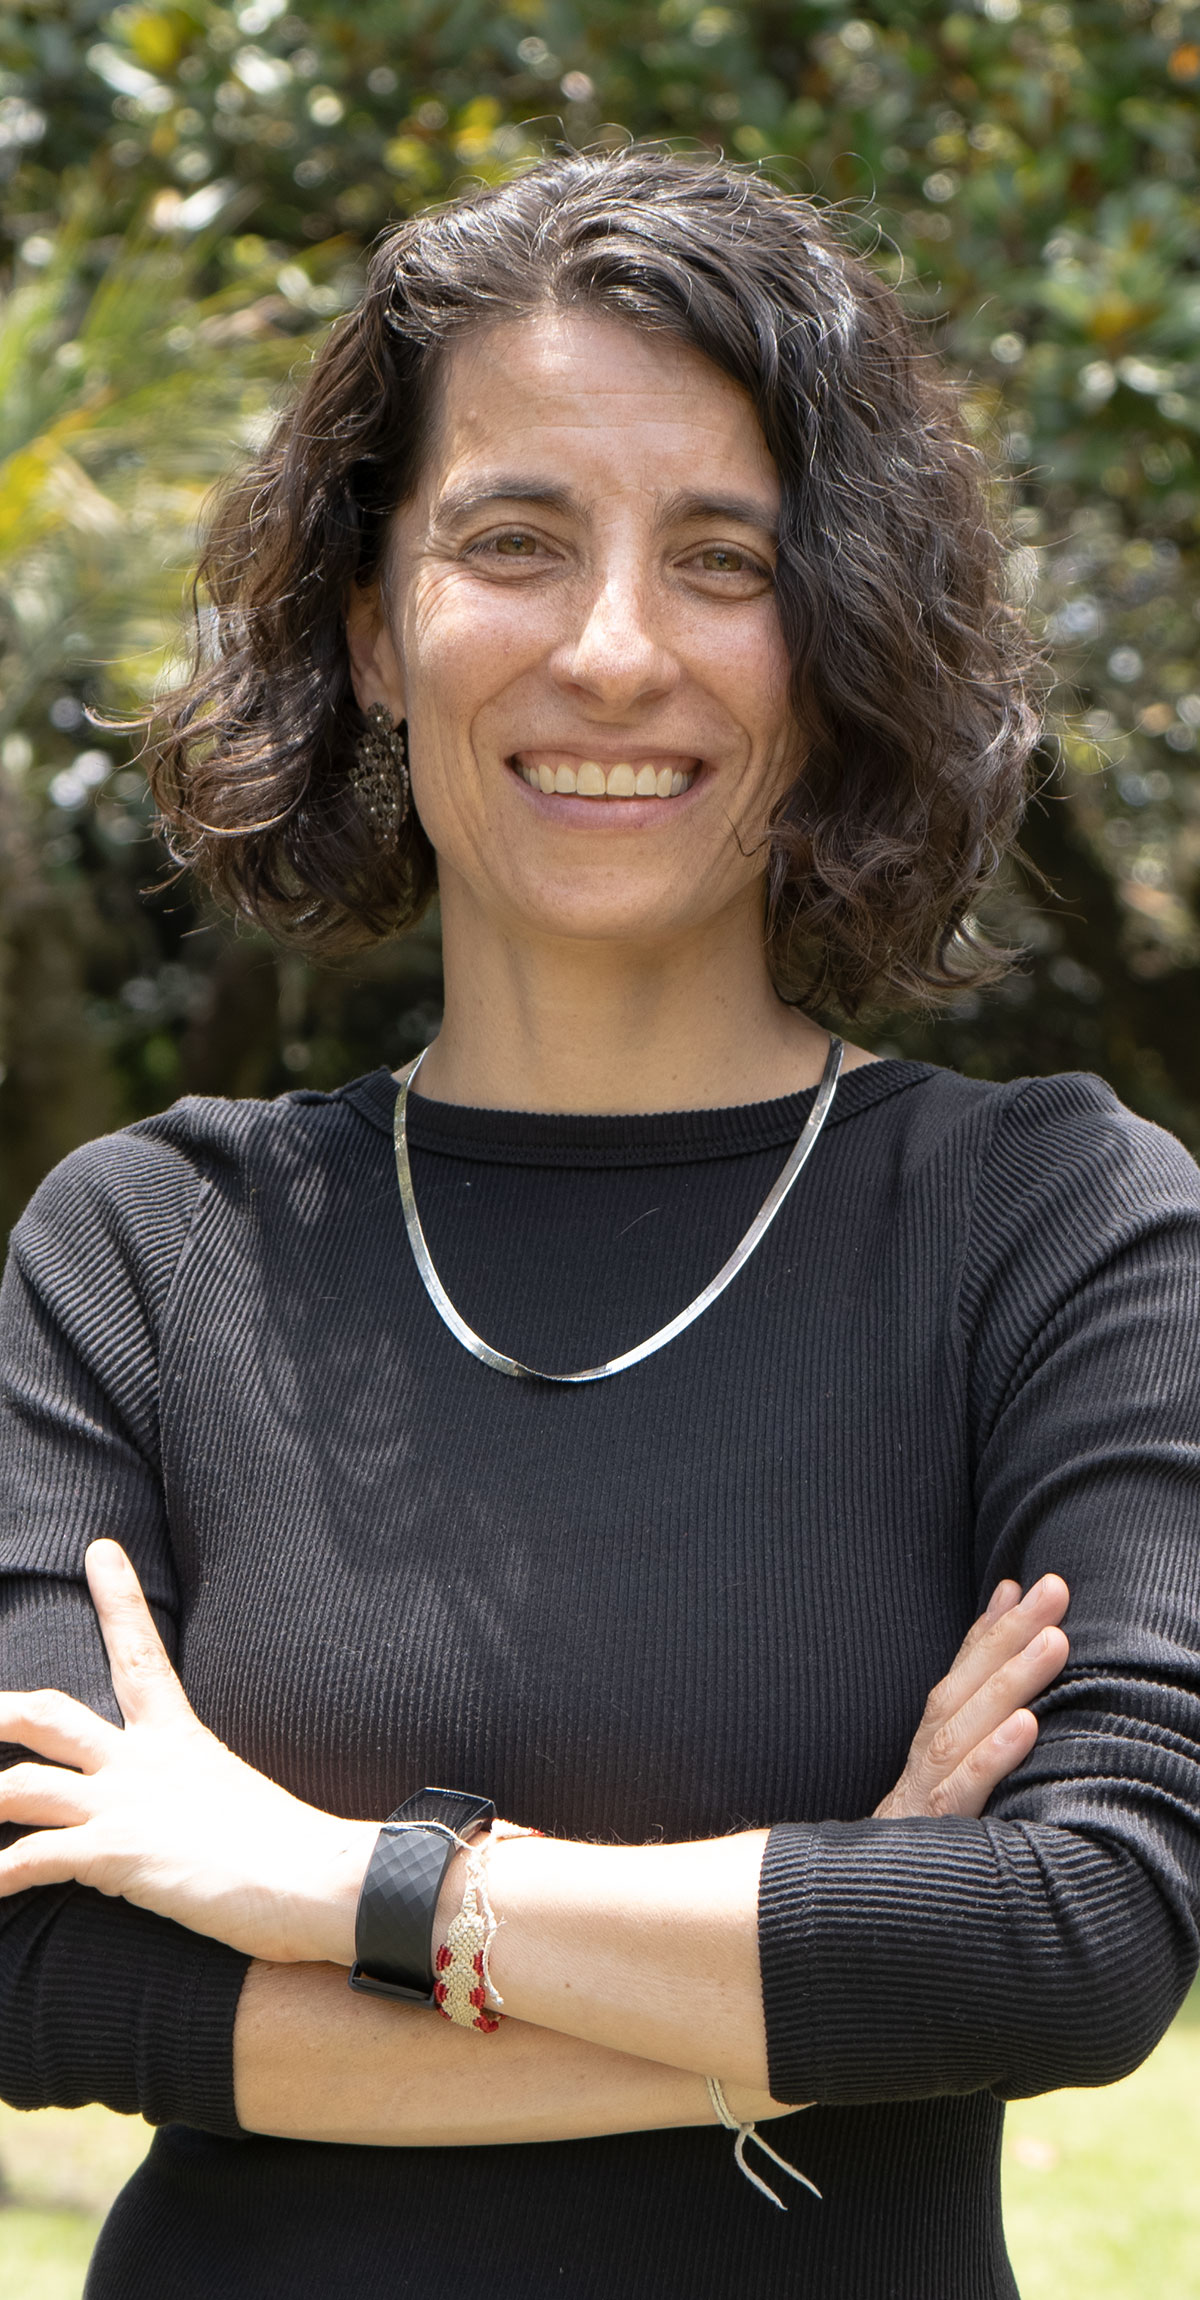   Silvia Rivera  Experta en Construcción Social y Psíquica del cuerpo